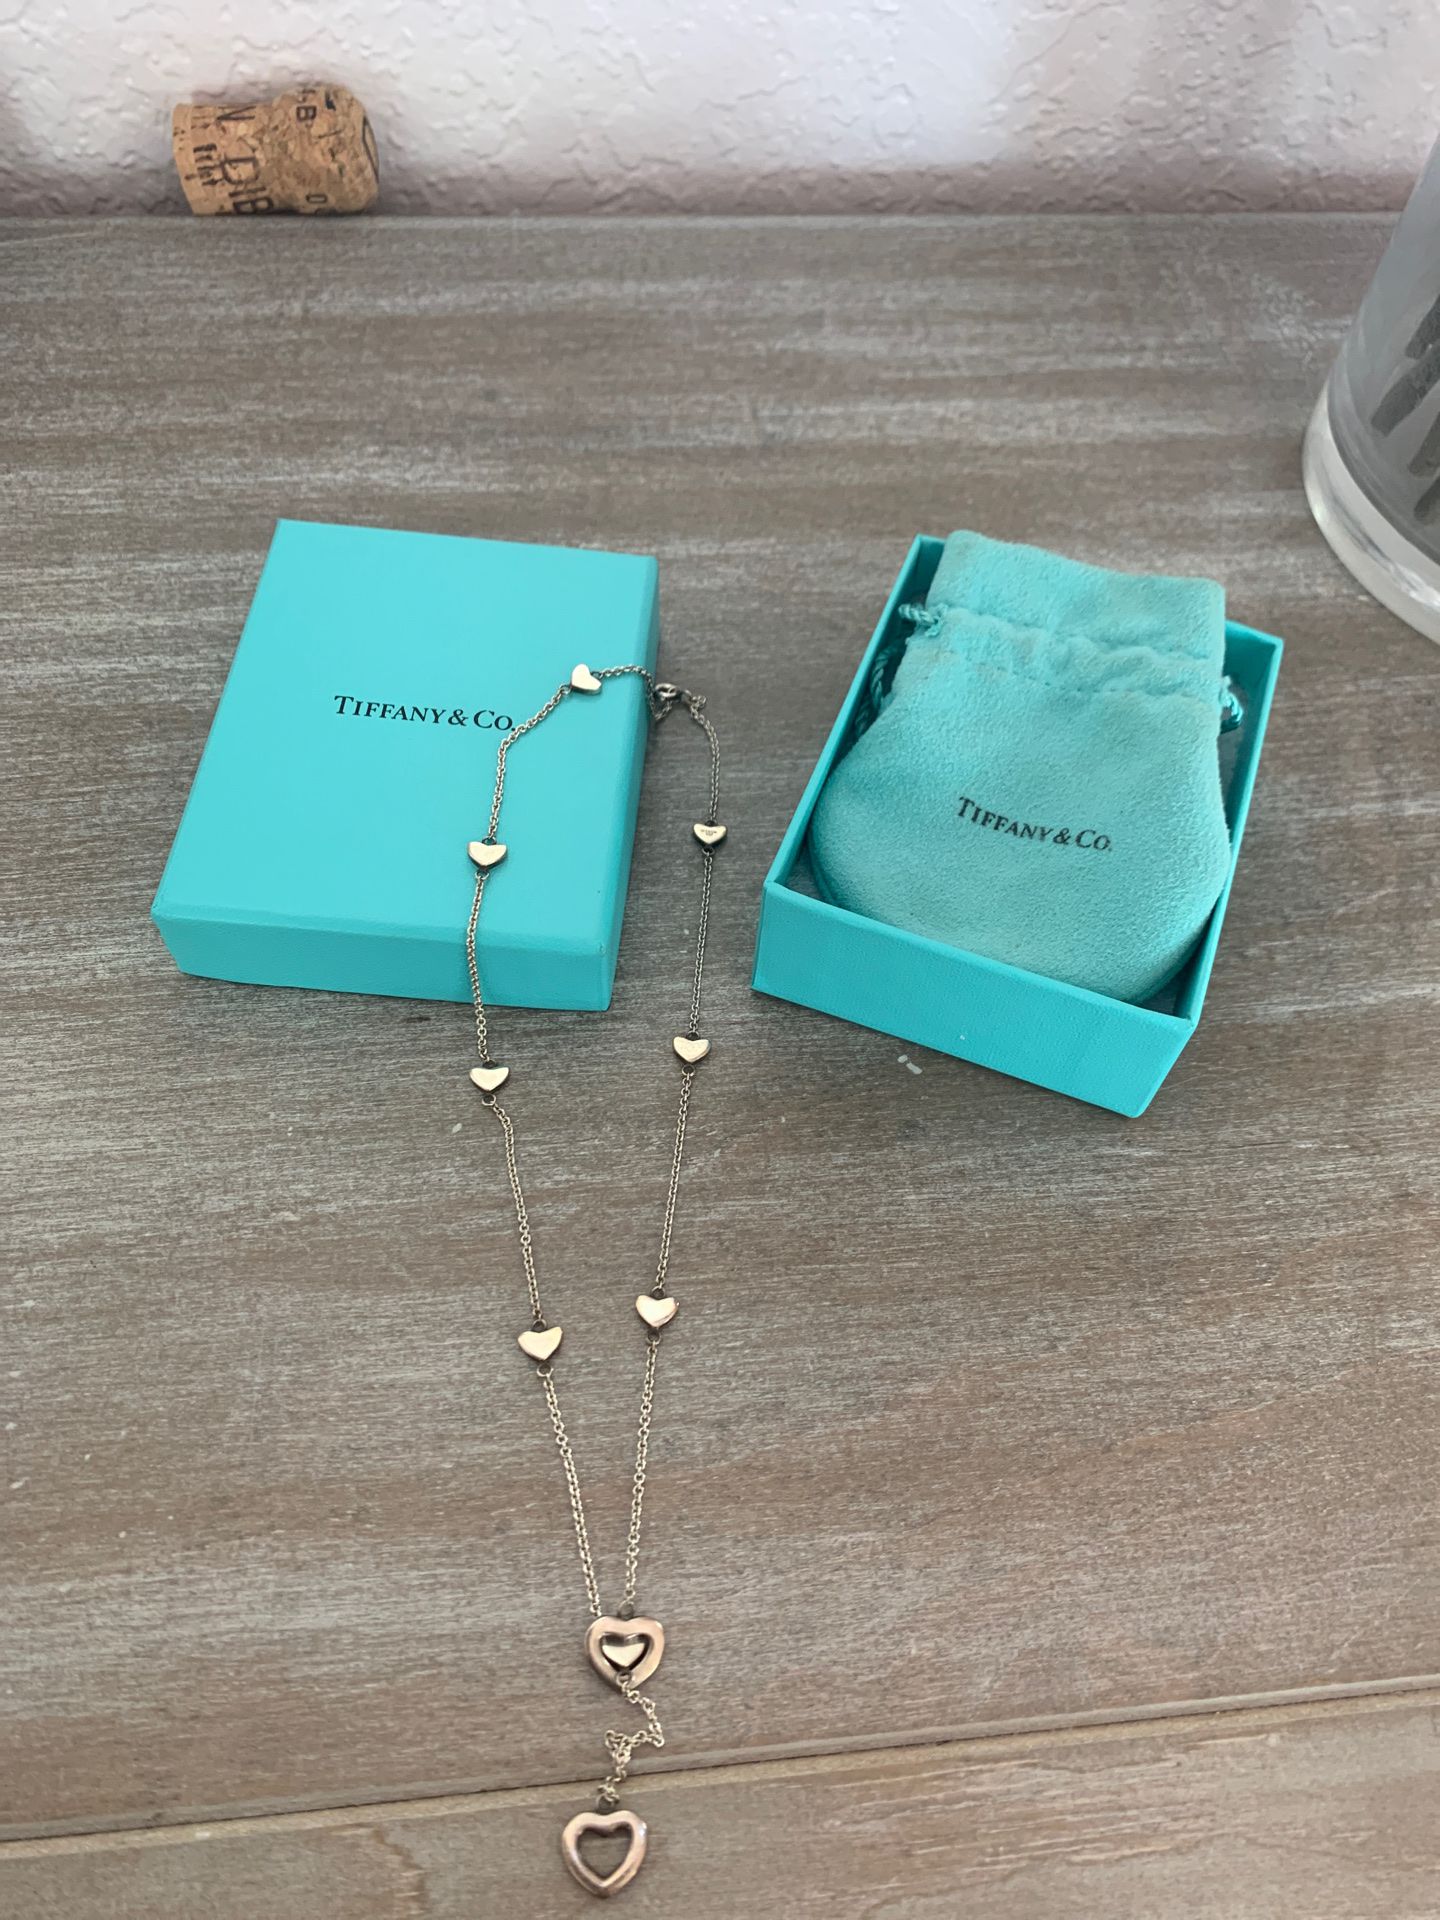 Tiffany heart necklace